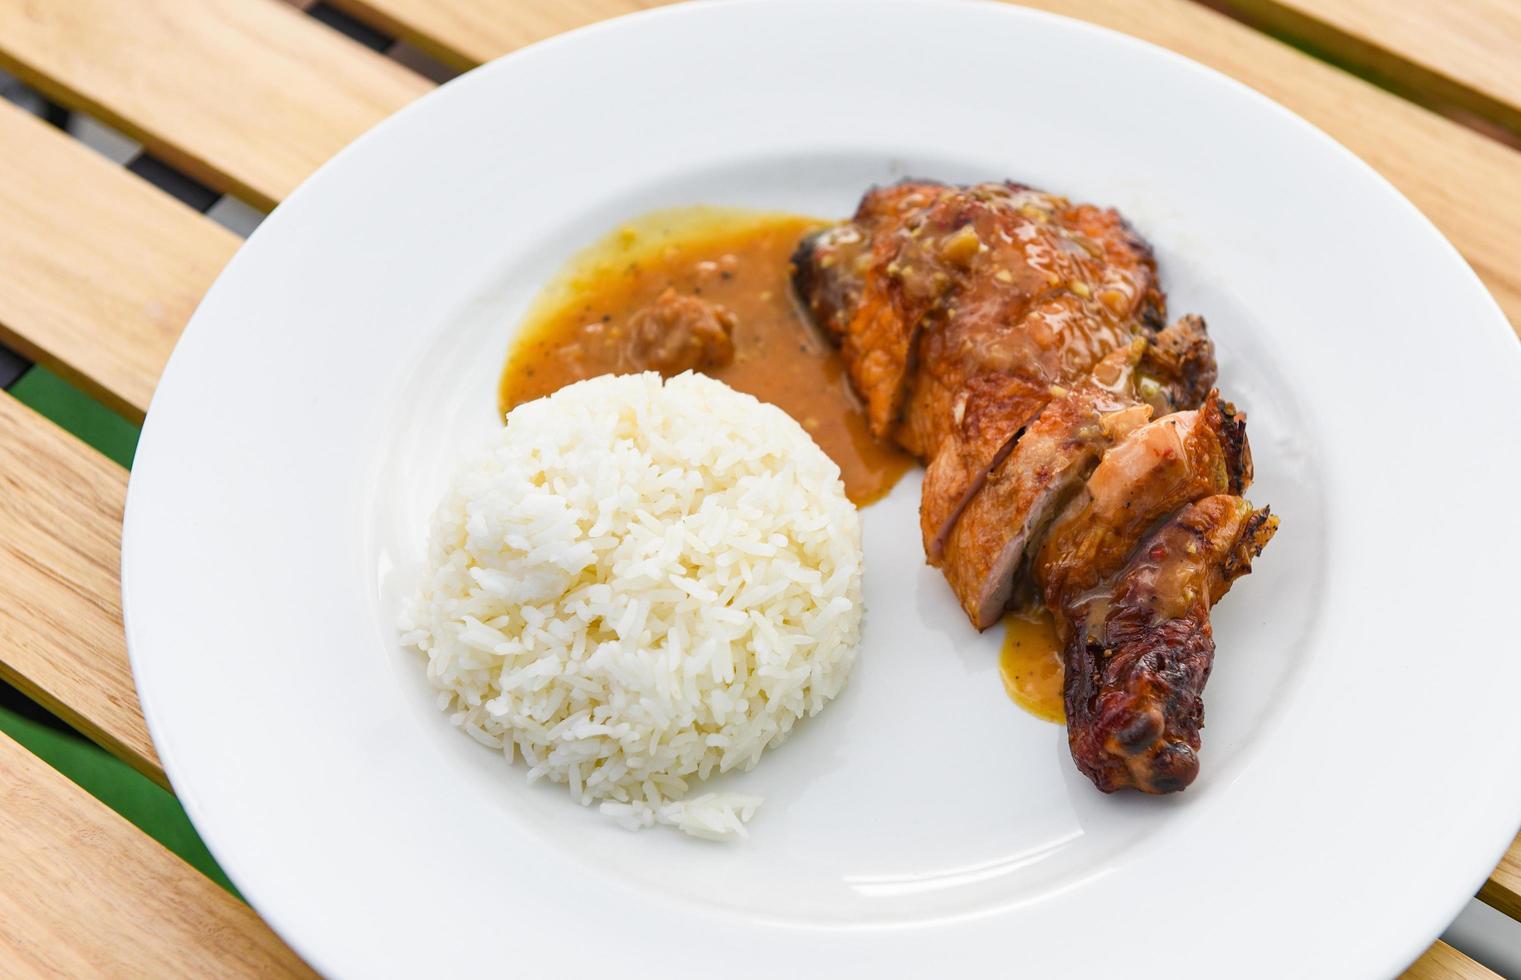 comida de arroz tailandés, arroz blanco cocido y pollo a la parrilla con salsa en un plato blanco y fondo de mesa de madera, patas de pollo picantes a la barbacoa a la parrilla foto